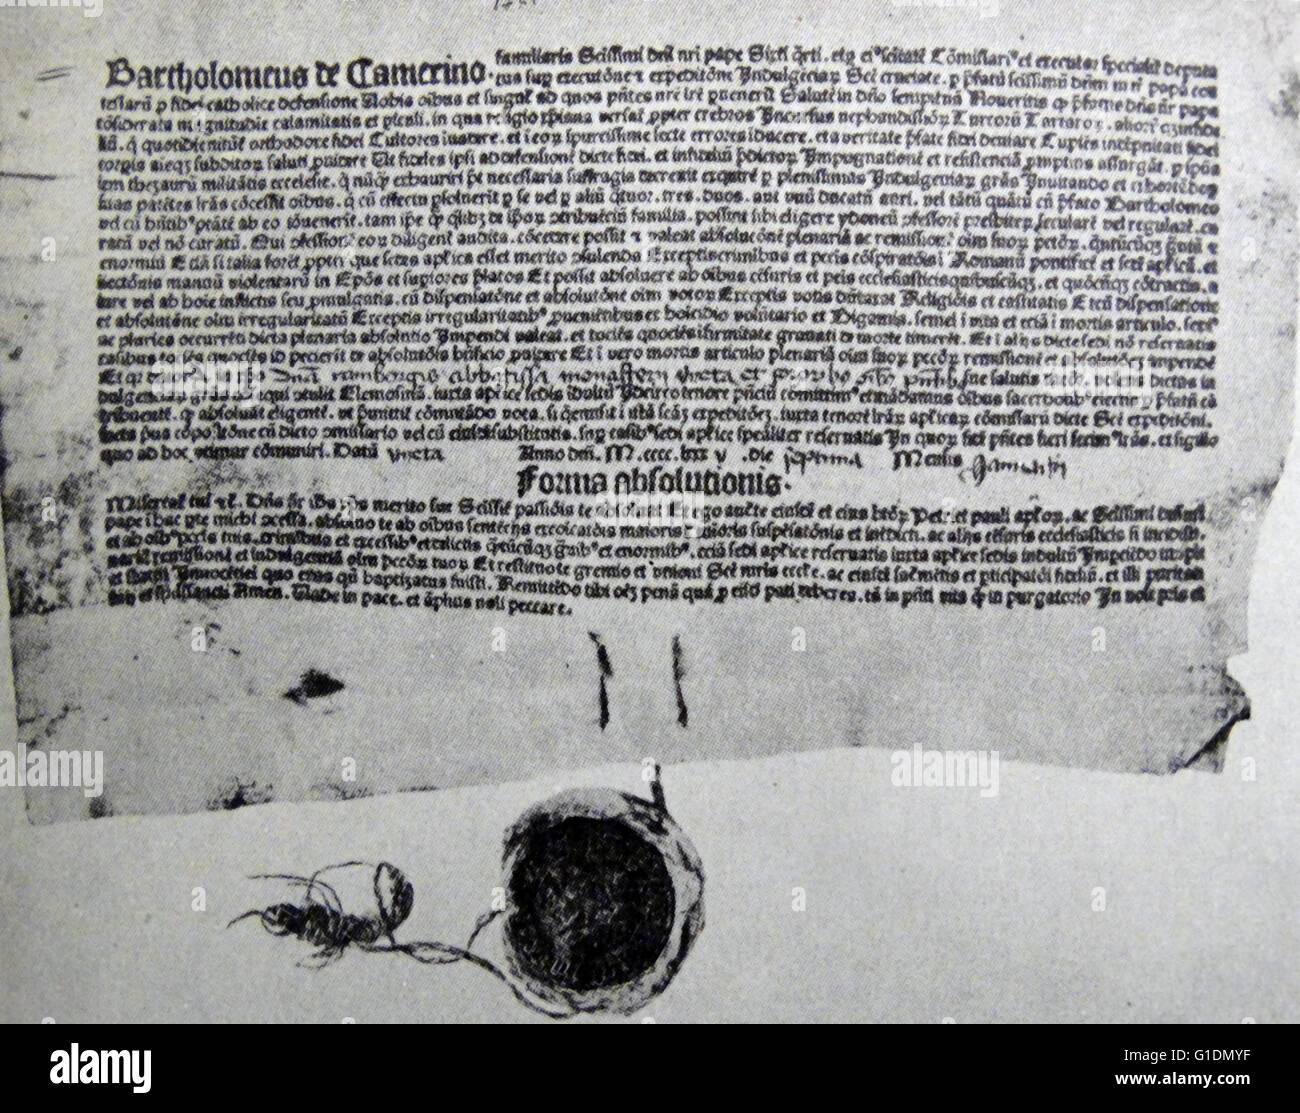 Copy of the Indulgences issued by Arcimboldus. Johannes Angelus Arcimboldus (1485-1555) a papal legate and indulgences peddlers. Dated 15th Century Stock Photo